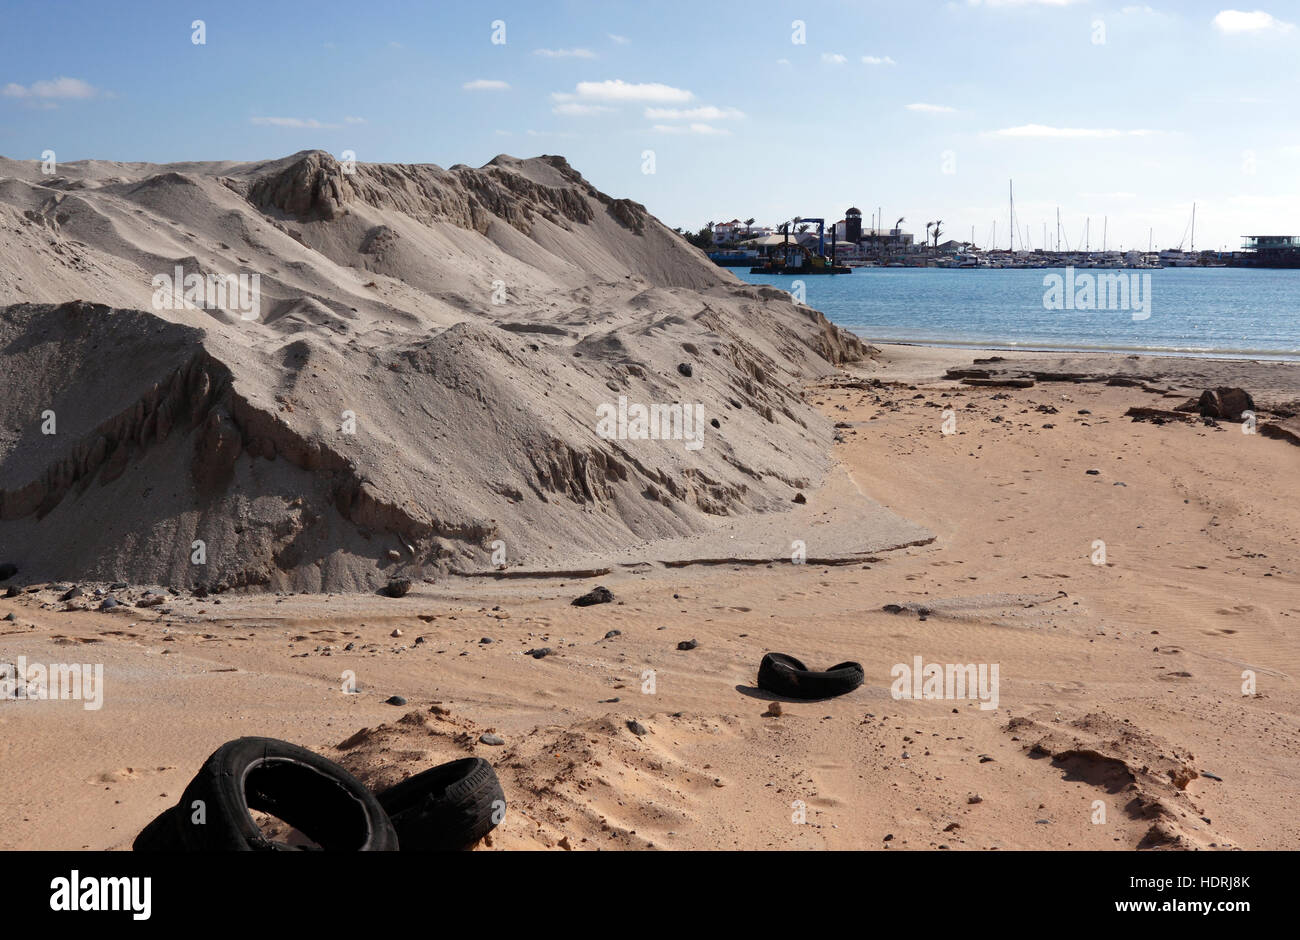 SITE DE CONSTRUCTION DE LA PLAGE DE Caleta de Fuste SUR L'île canarienne de Fuerteventura Banque D'Images